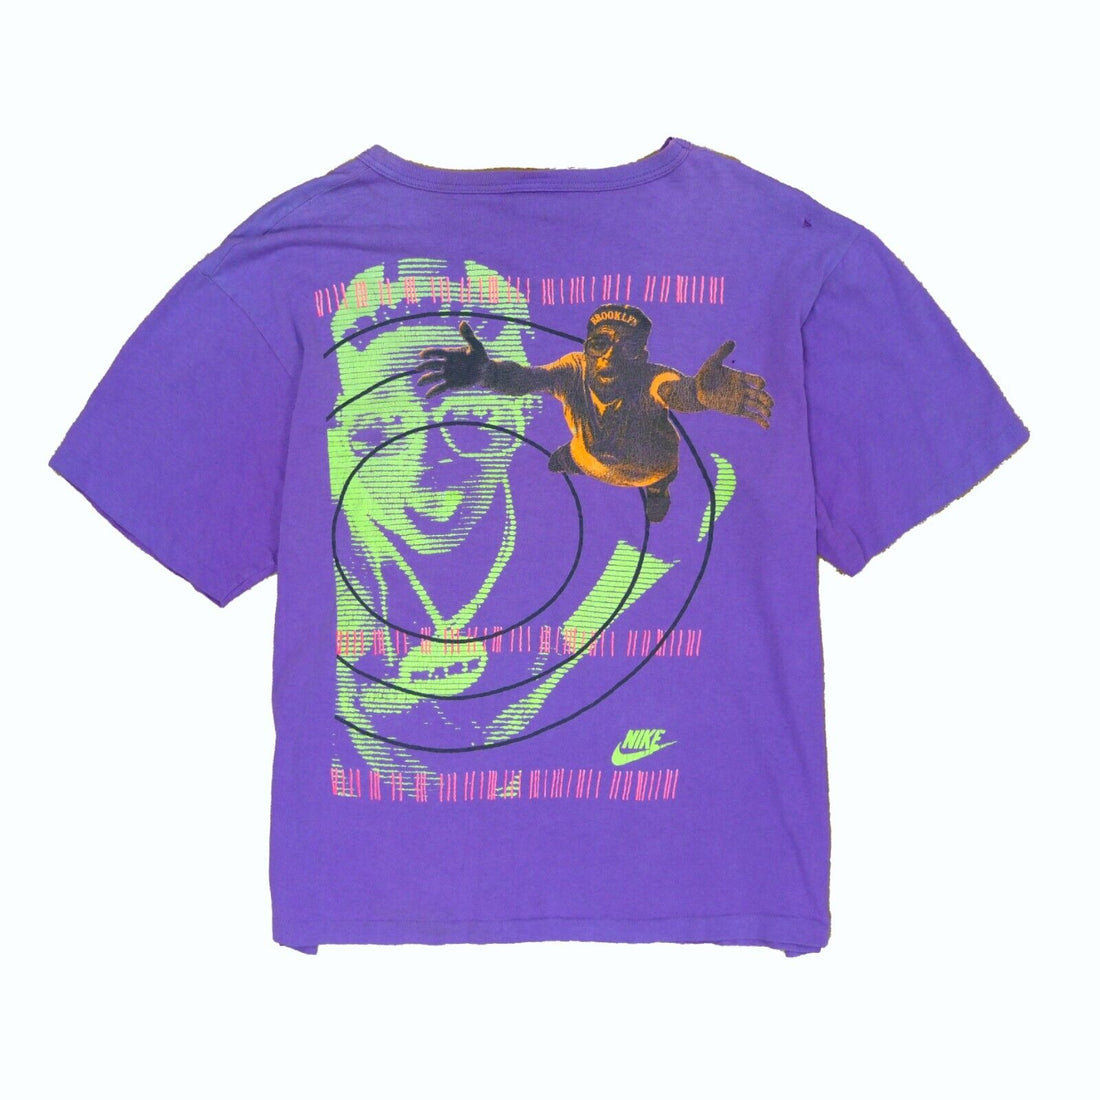 Vintage Nike Spike Lee T-Shirt Size Medium Purple 80s 90s